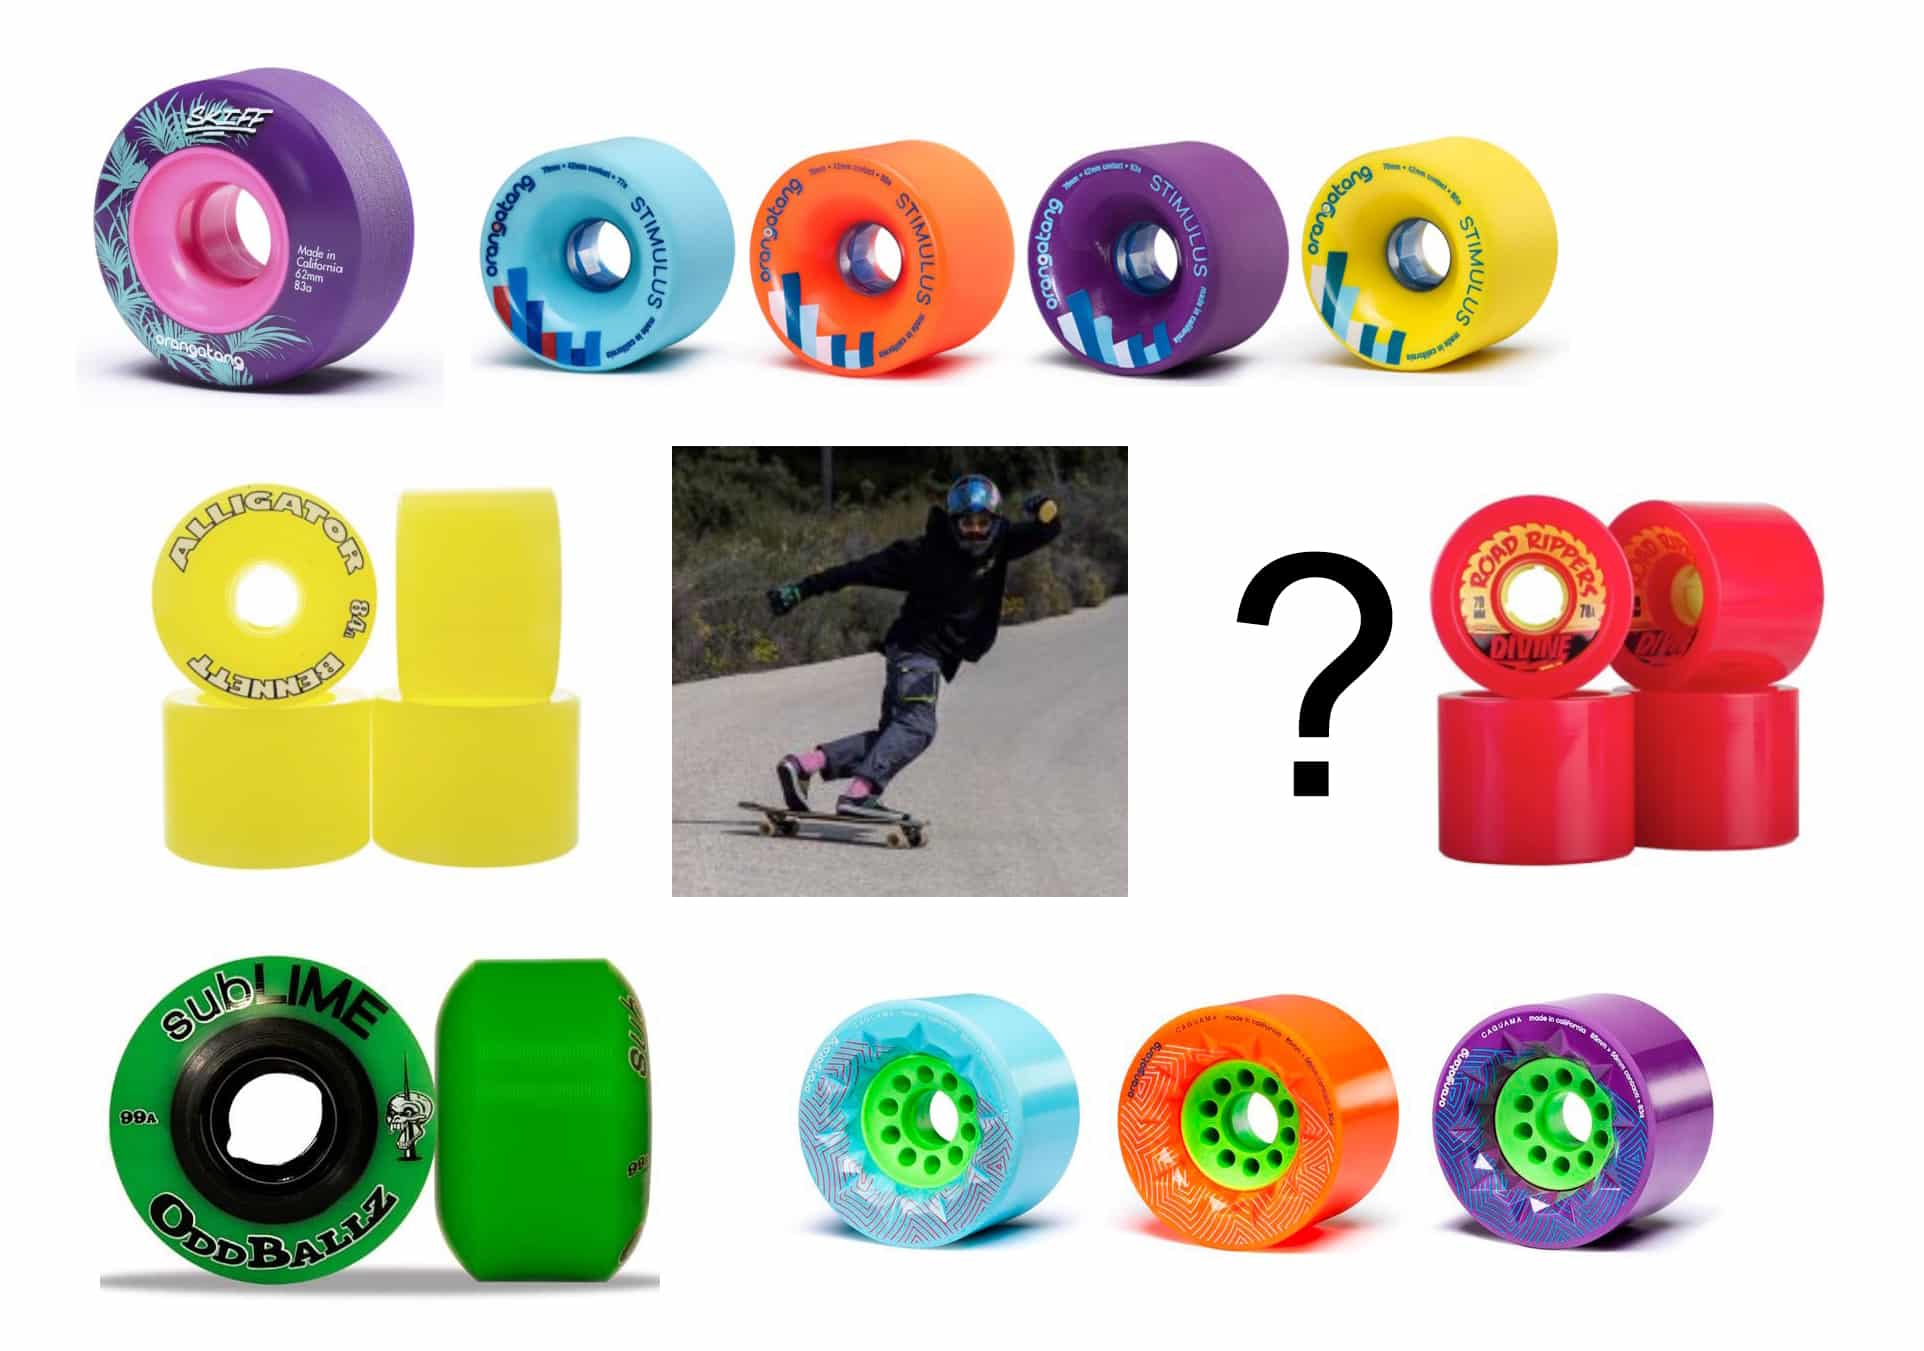 Cómo elegir ruedas para skate?